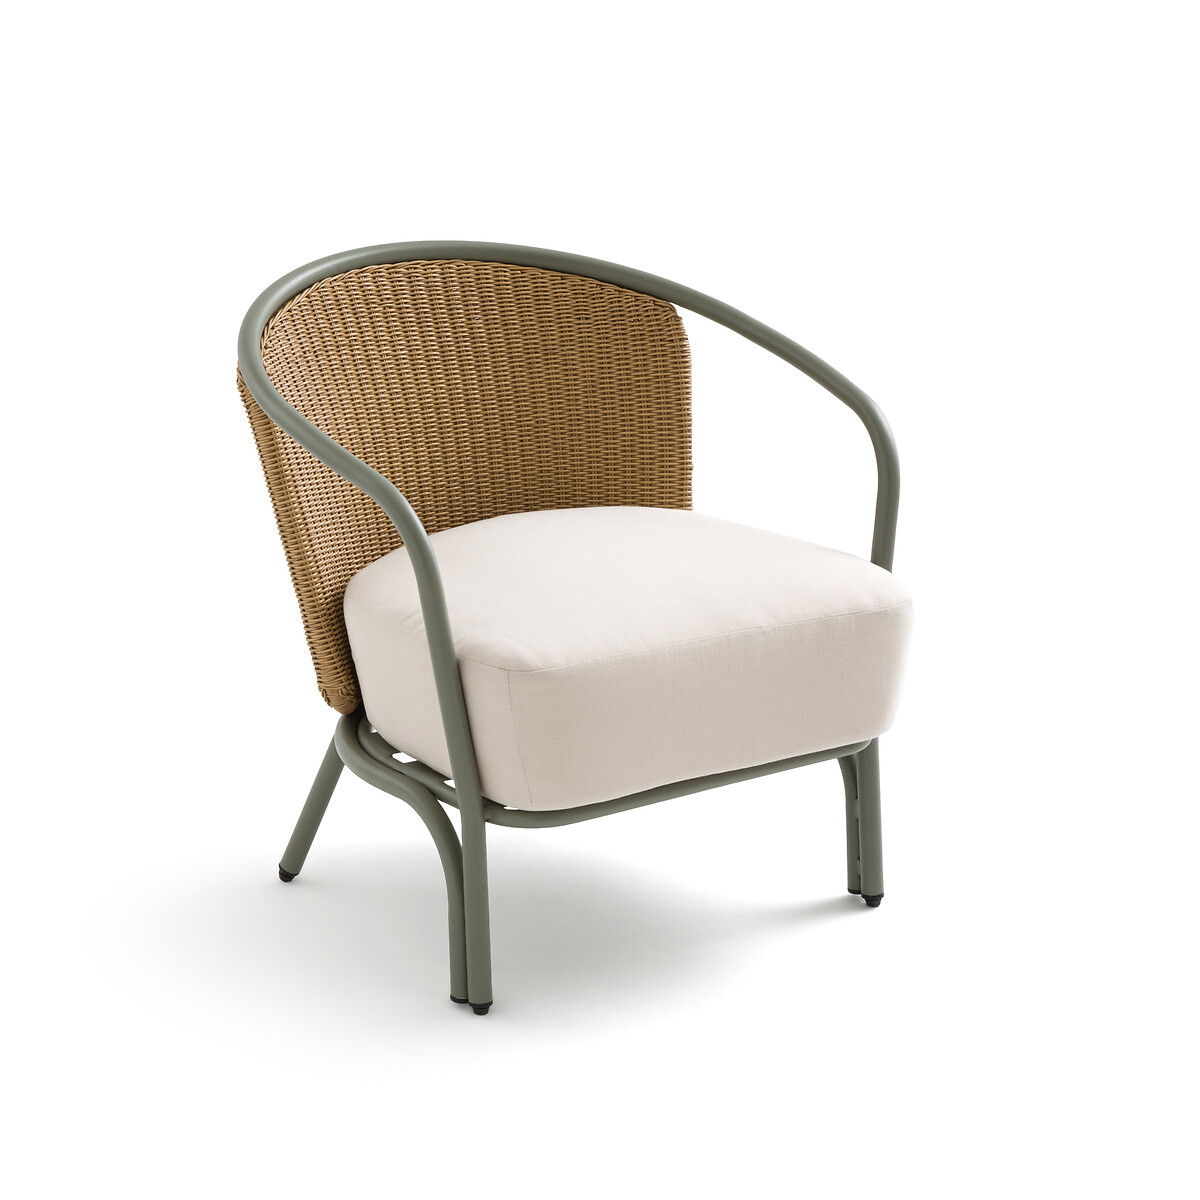 Кресло садовое из стали и полимера Joati единый размер зеленый кресло садовое из плетеного пластика selya единый размер зеленый